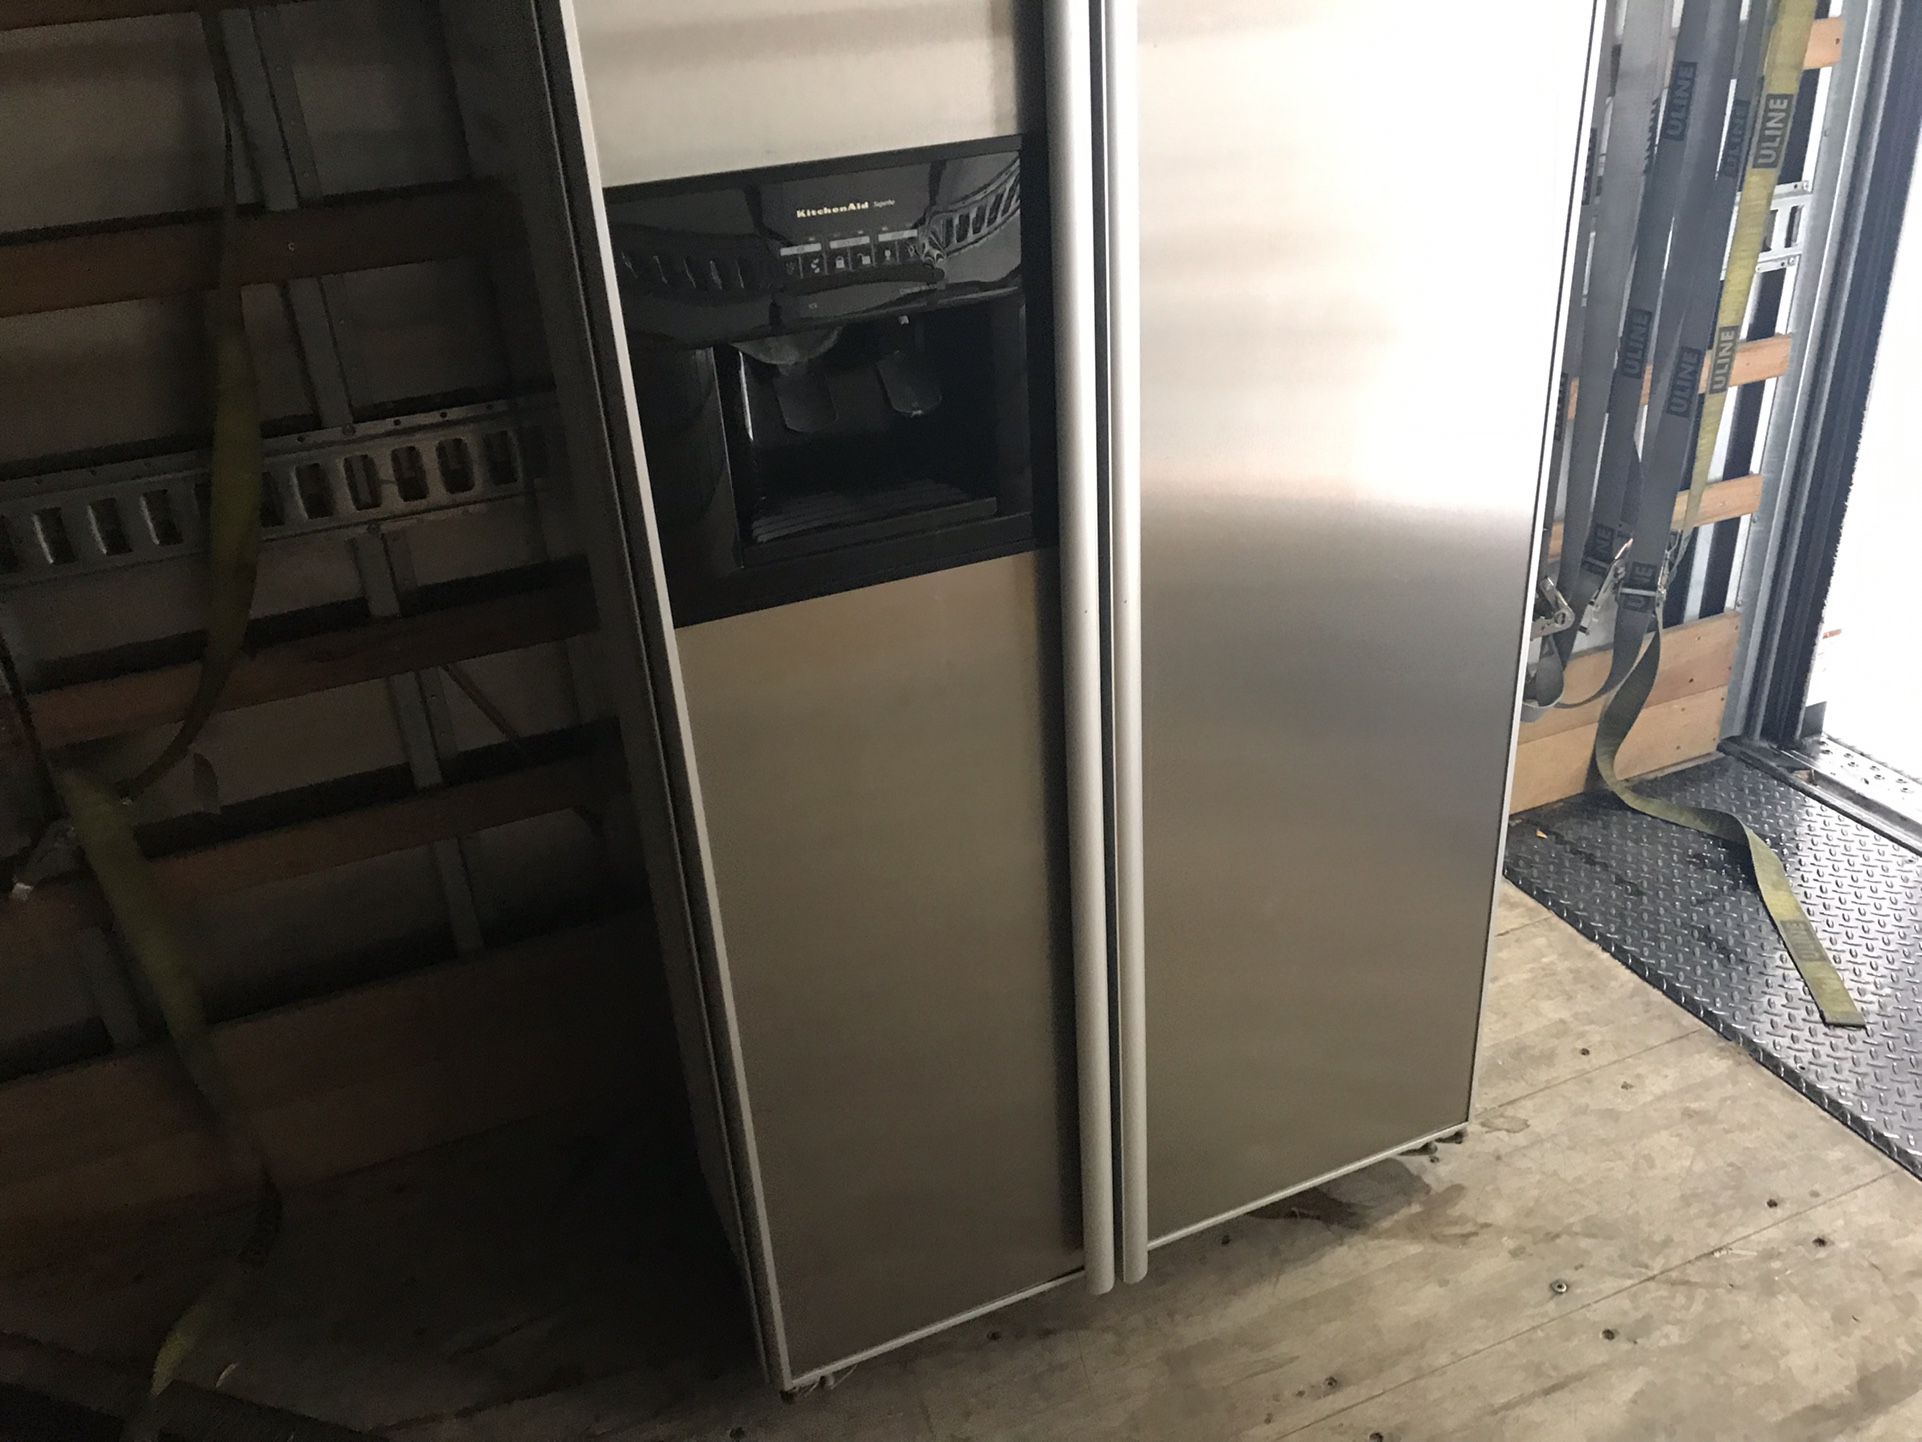 36” Kitchen-aide Built In Refrigerator 